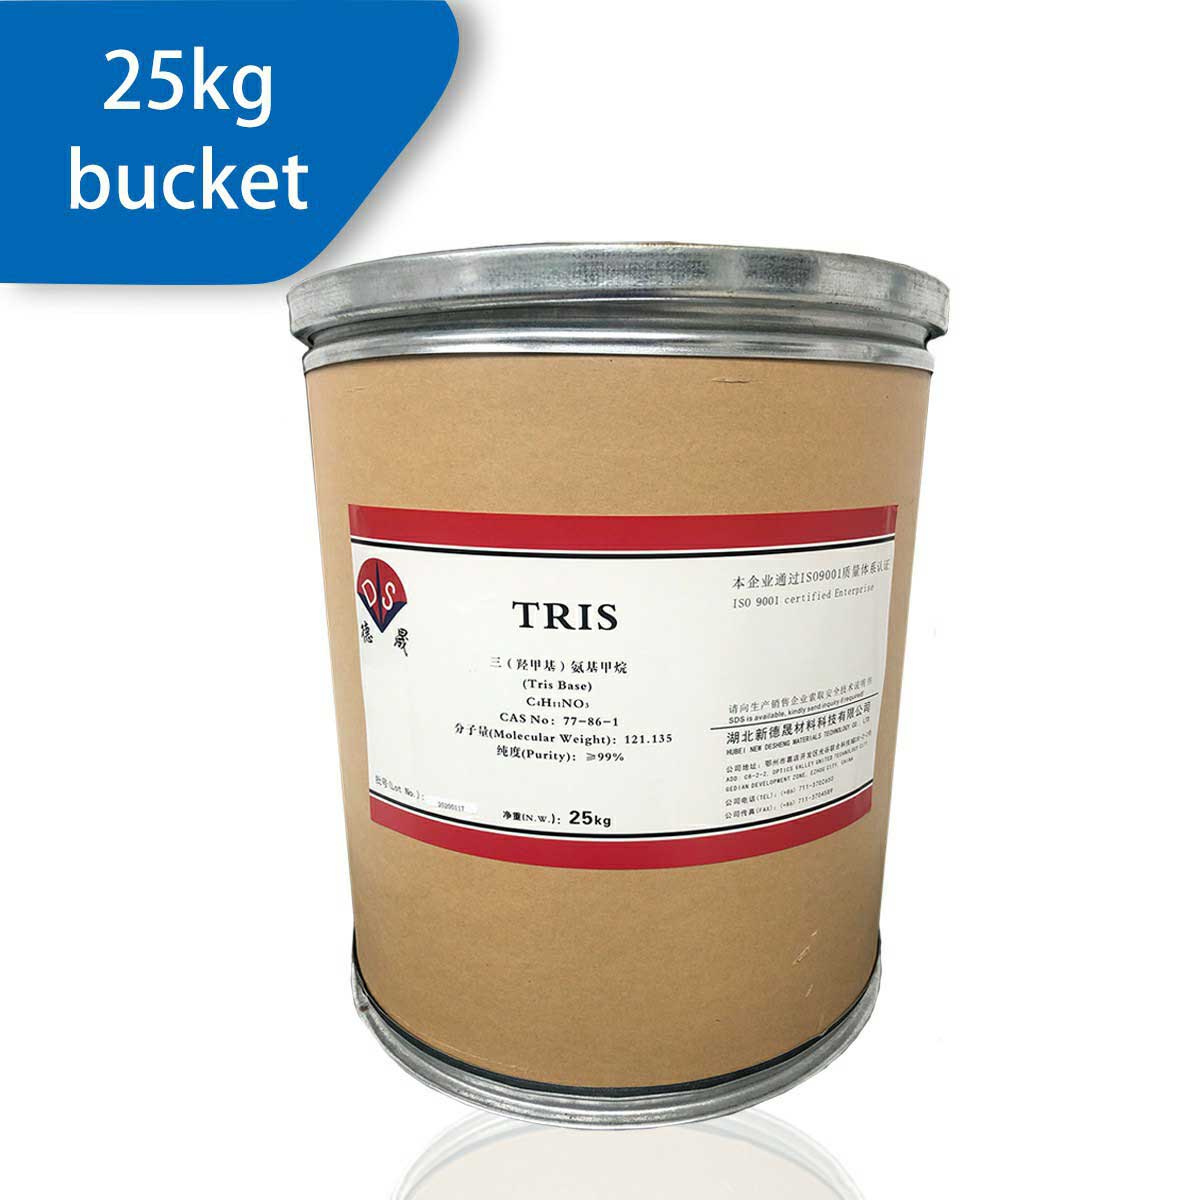 TRIS-25kg.jpg